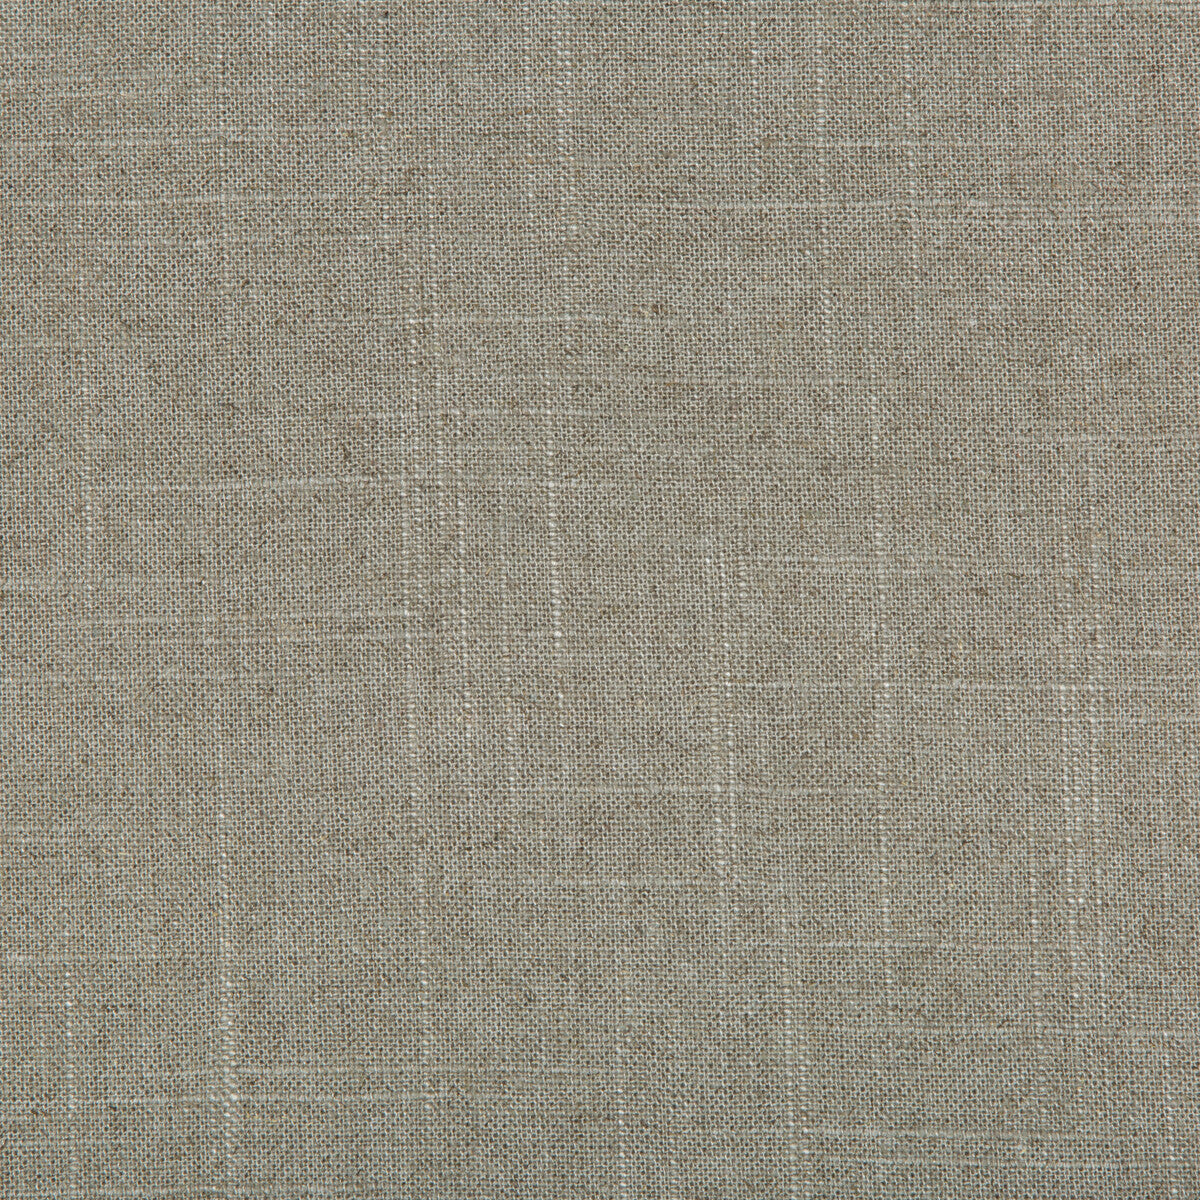 Kravet Basics fabric in 30808-1121 color - pattern 30808.1121.0 - by Kravet Basics